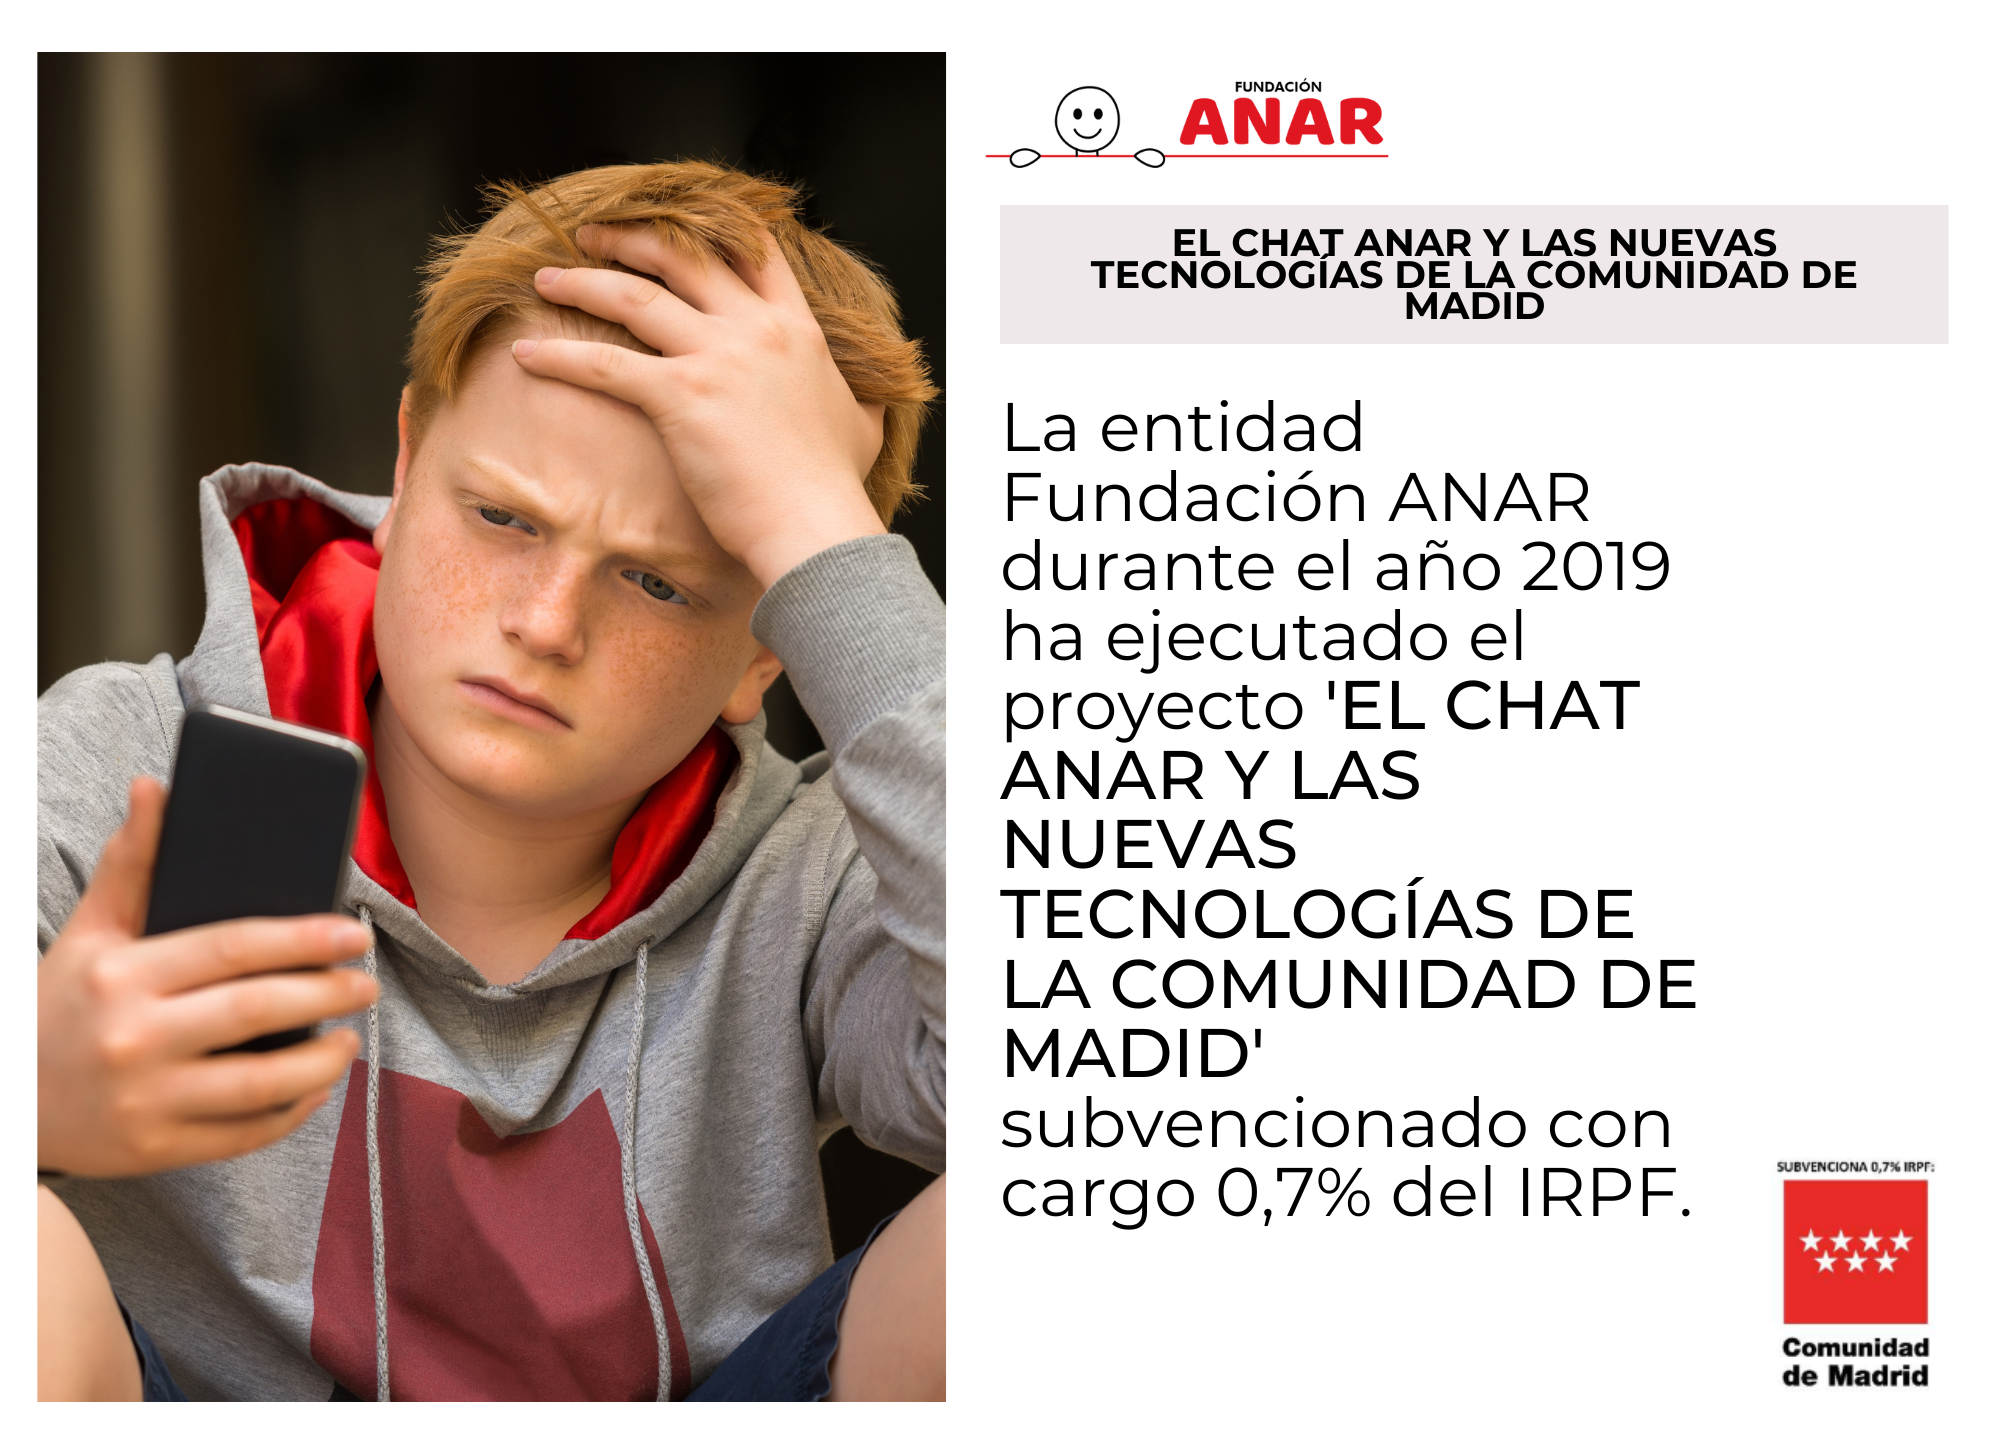 El CHAT ANAR y las Nuevas Tecnologías, subvencionado por la Comunidad de Madrid